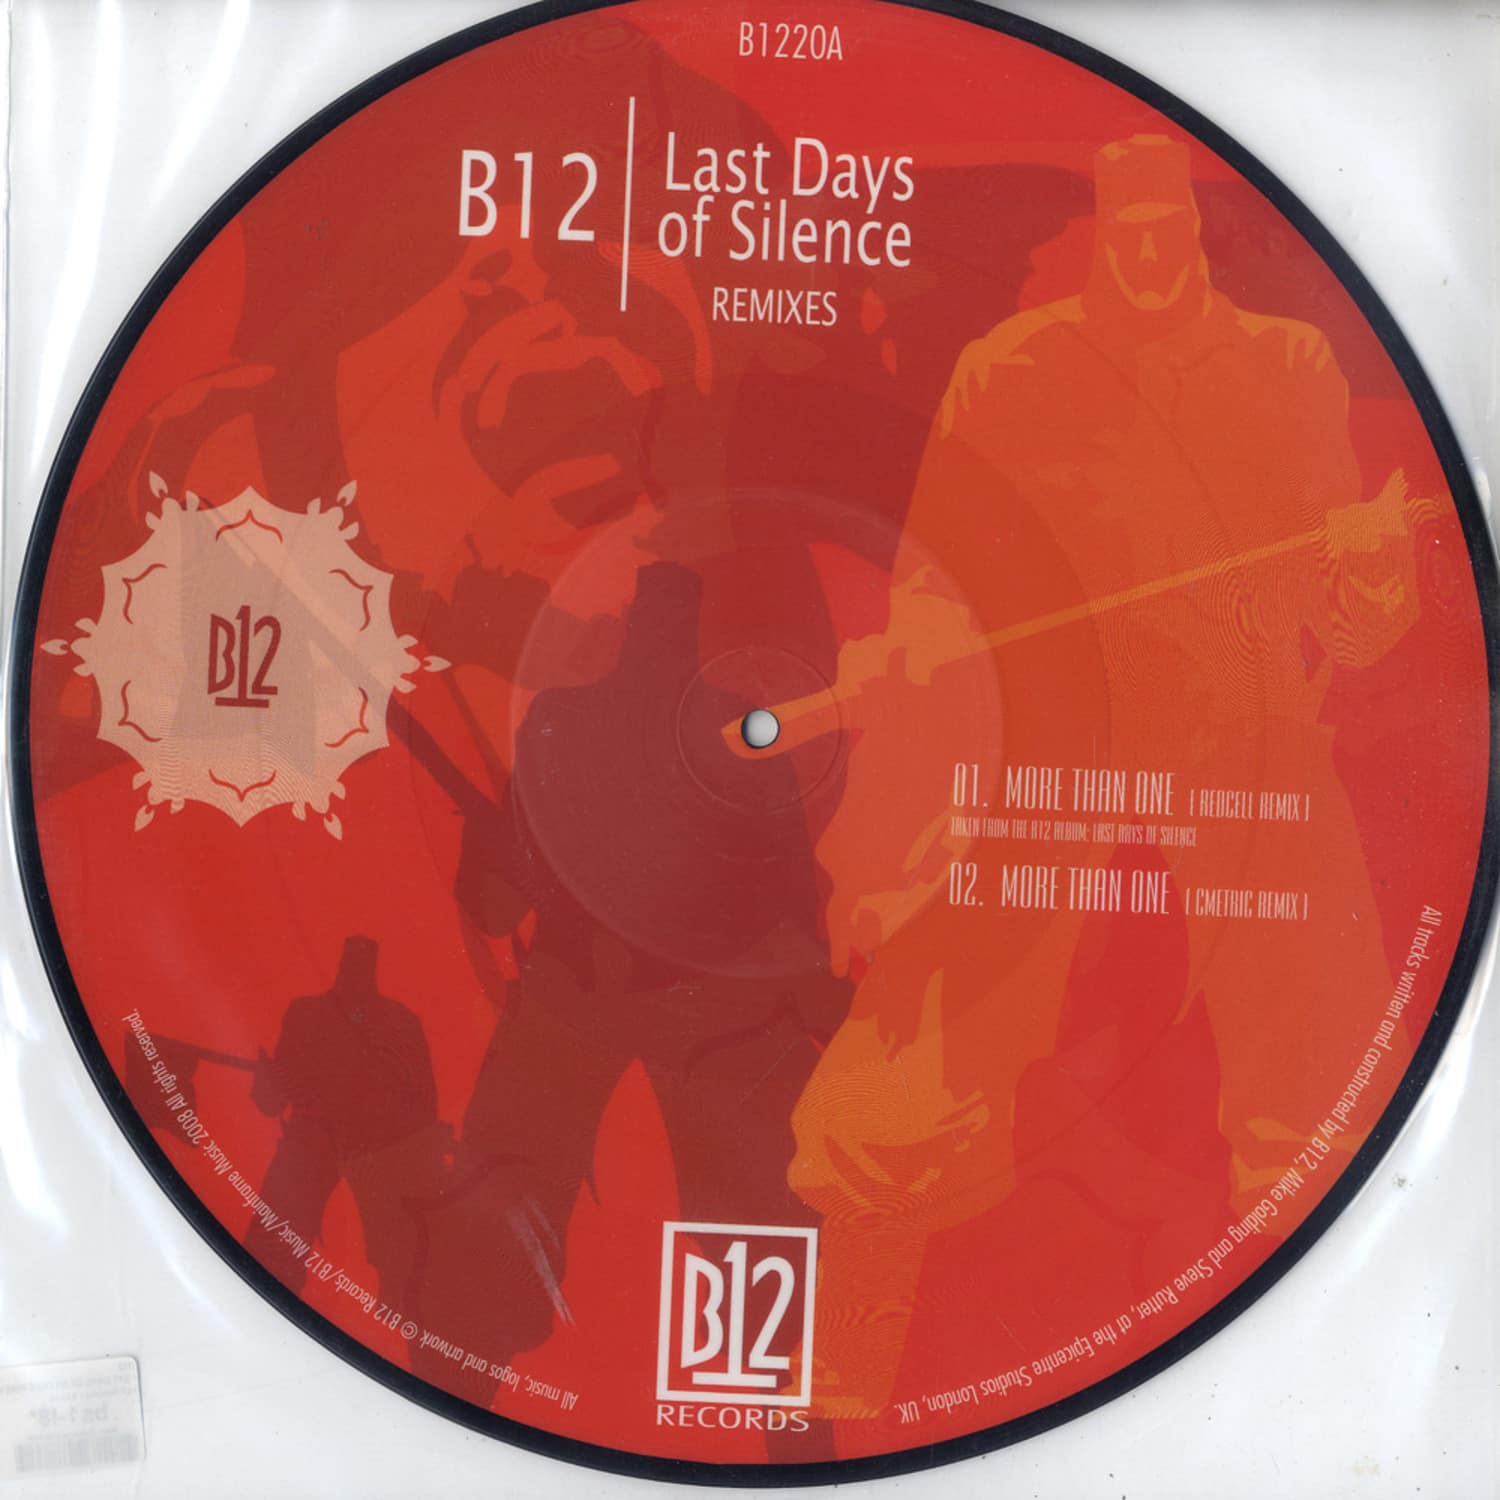 B12 - LAST DAYS OF SILENCE RMX 